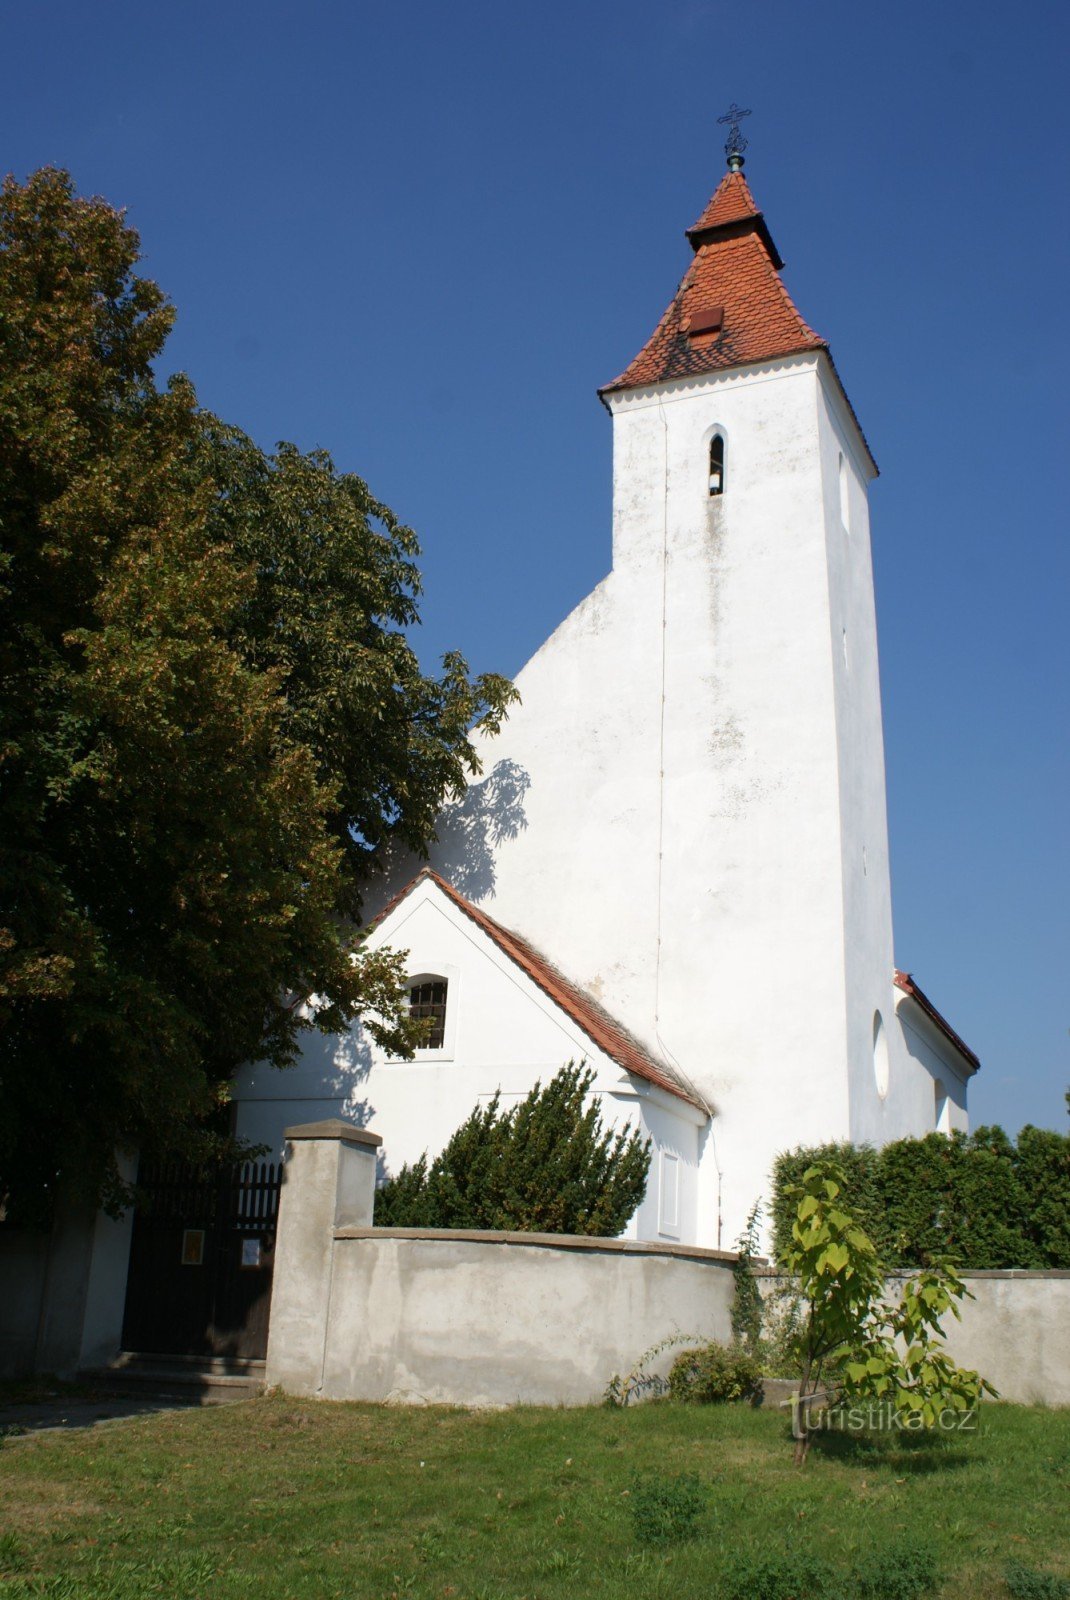 Hovorčovice - Nhà thờ Chúa giáng sinh của St. John the Baptist